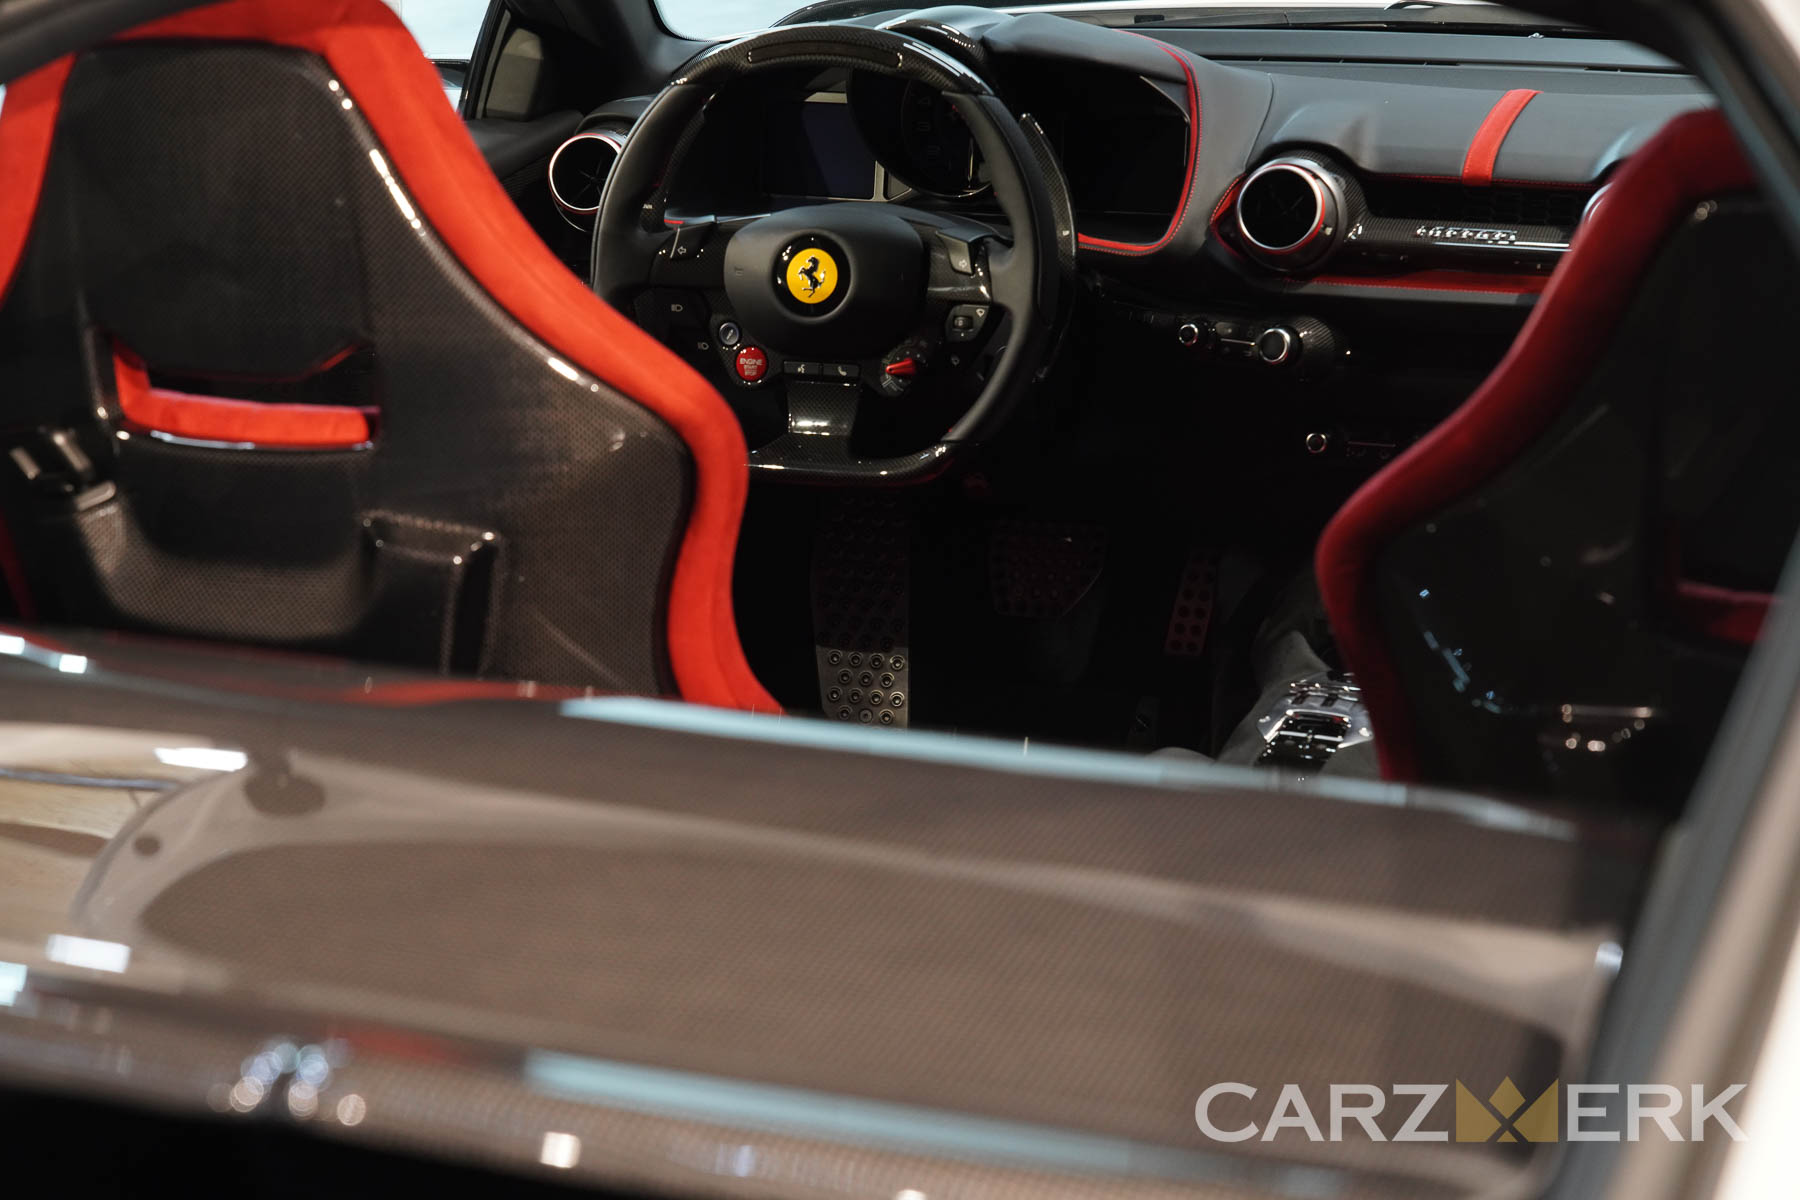 2022 Ferrari 812 Competizione - Bianco Cervino -Interior shot from the back